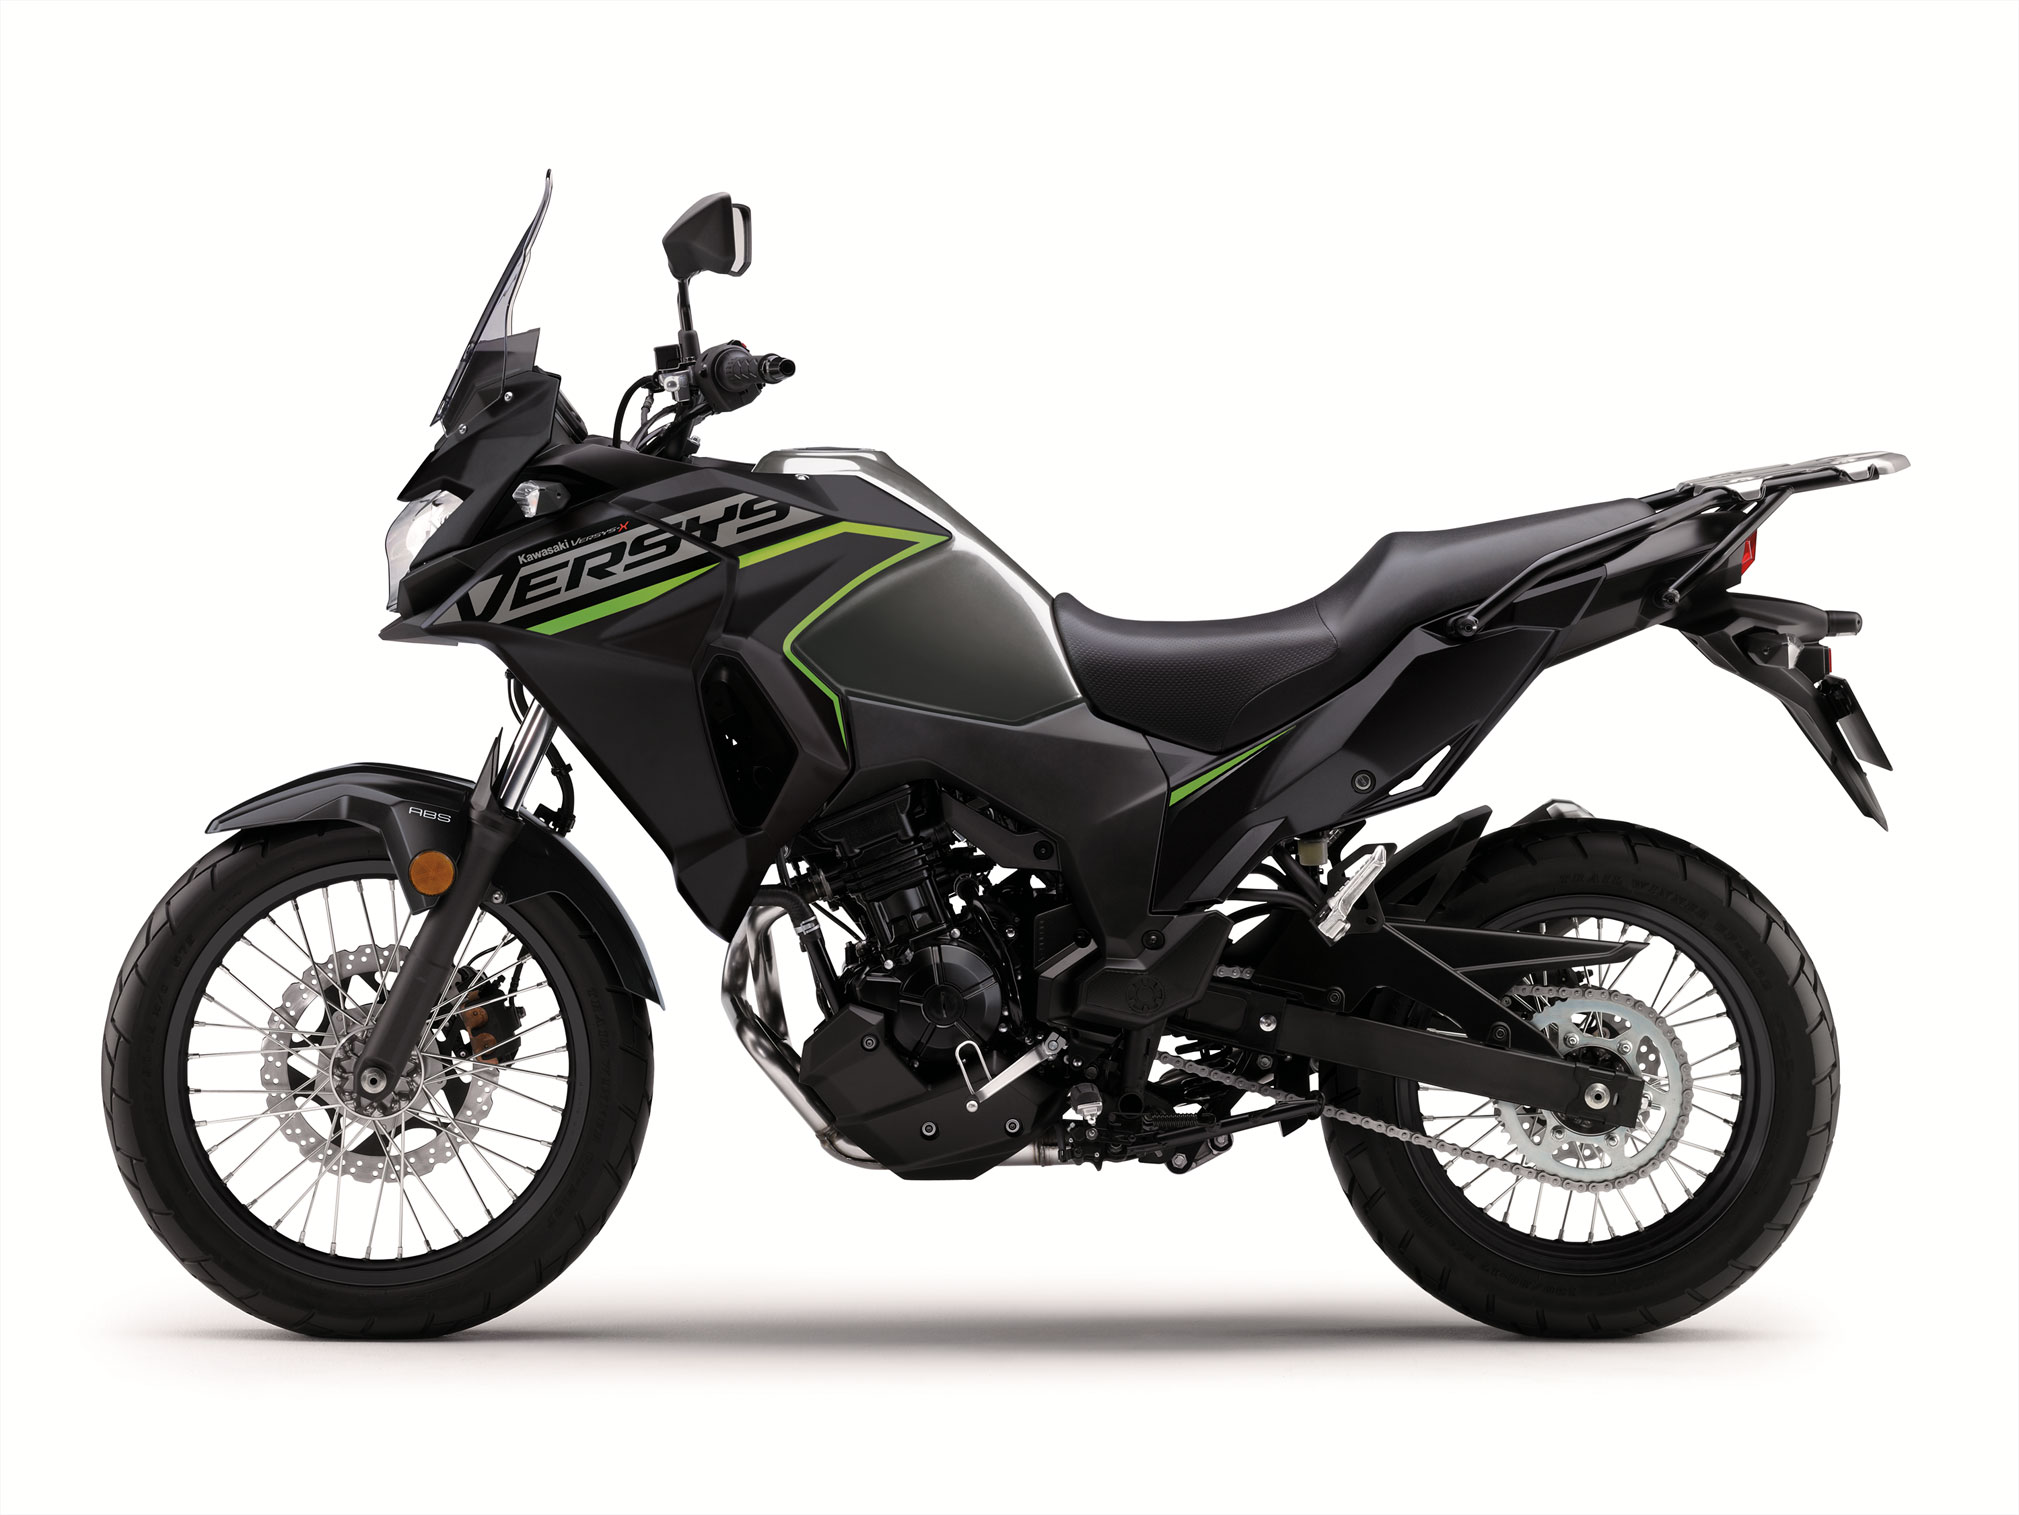 2019 Kawasaki Versys-X 300 Guide • Total Motorcycle